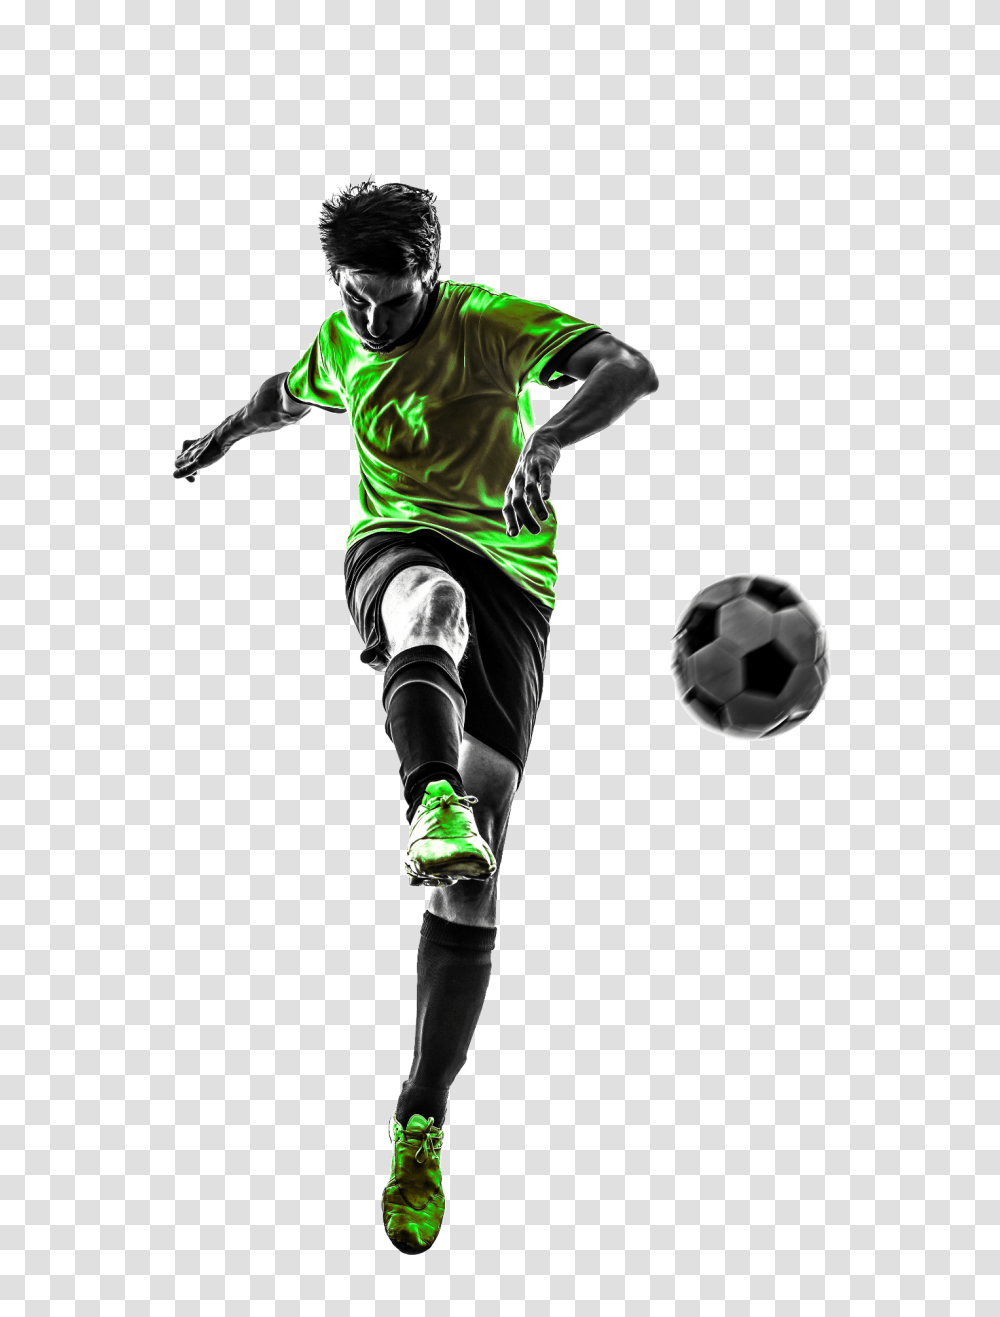 Download Fair Transfer Value Imagen Jugador De Futbol, Person, Human, Soccer Ball, Football Transparent Png